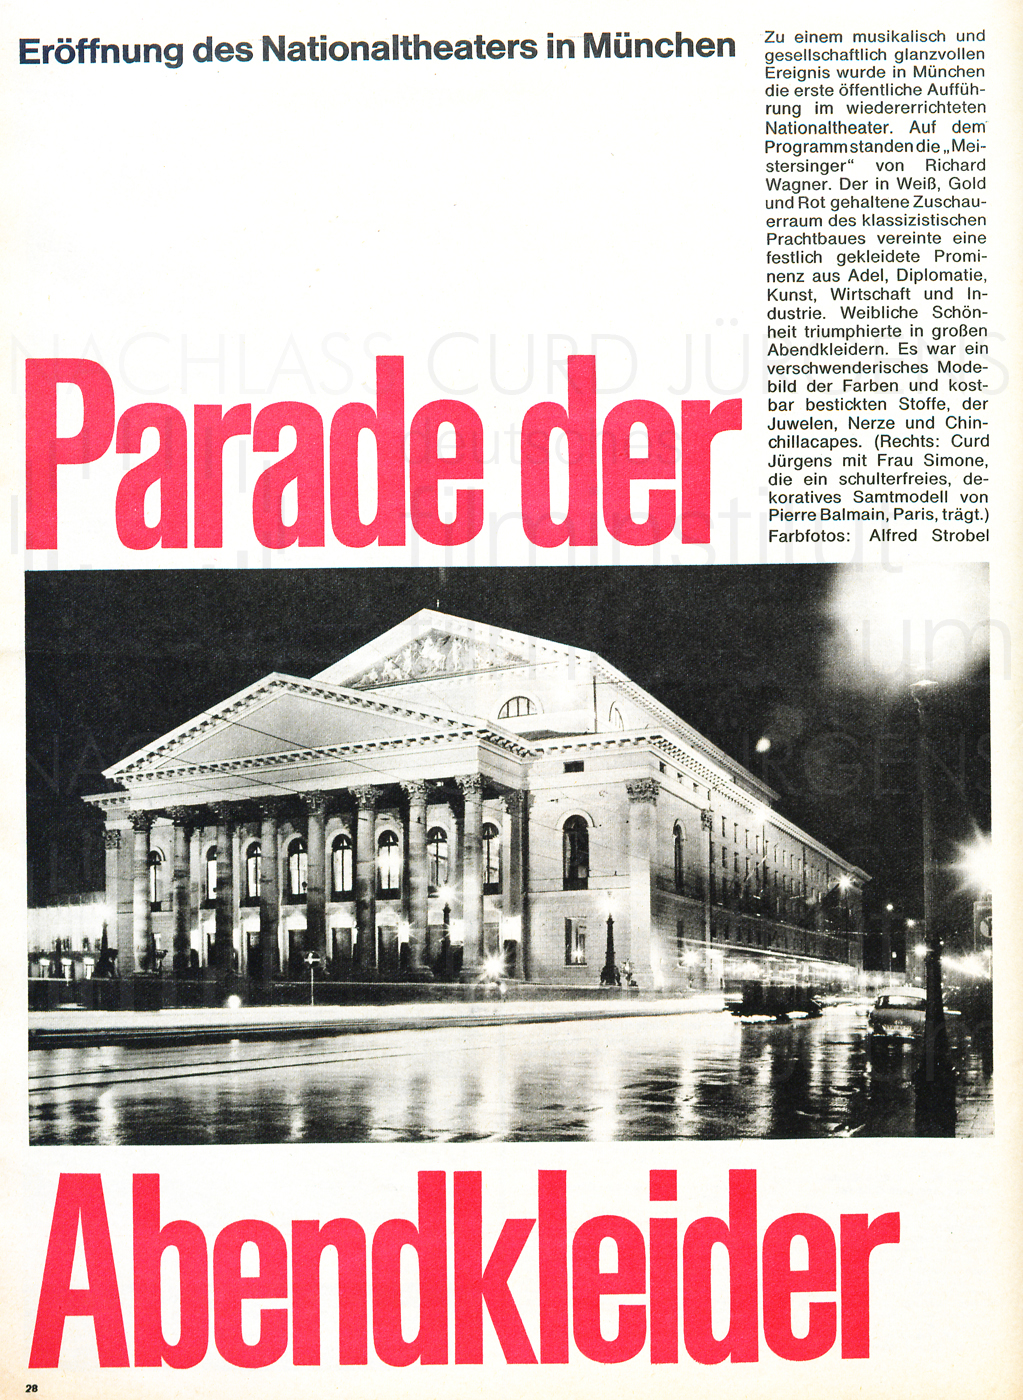 Freundin Film Revue: “Parade der Abendkleider“ Nr. 27, 24.12.1963